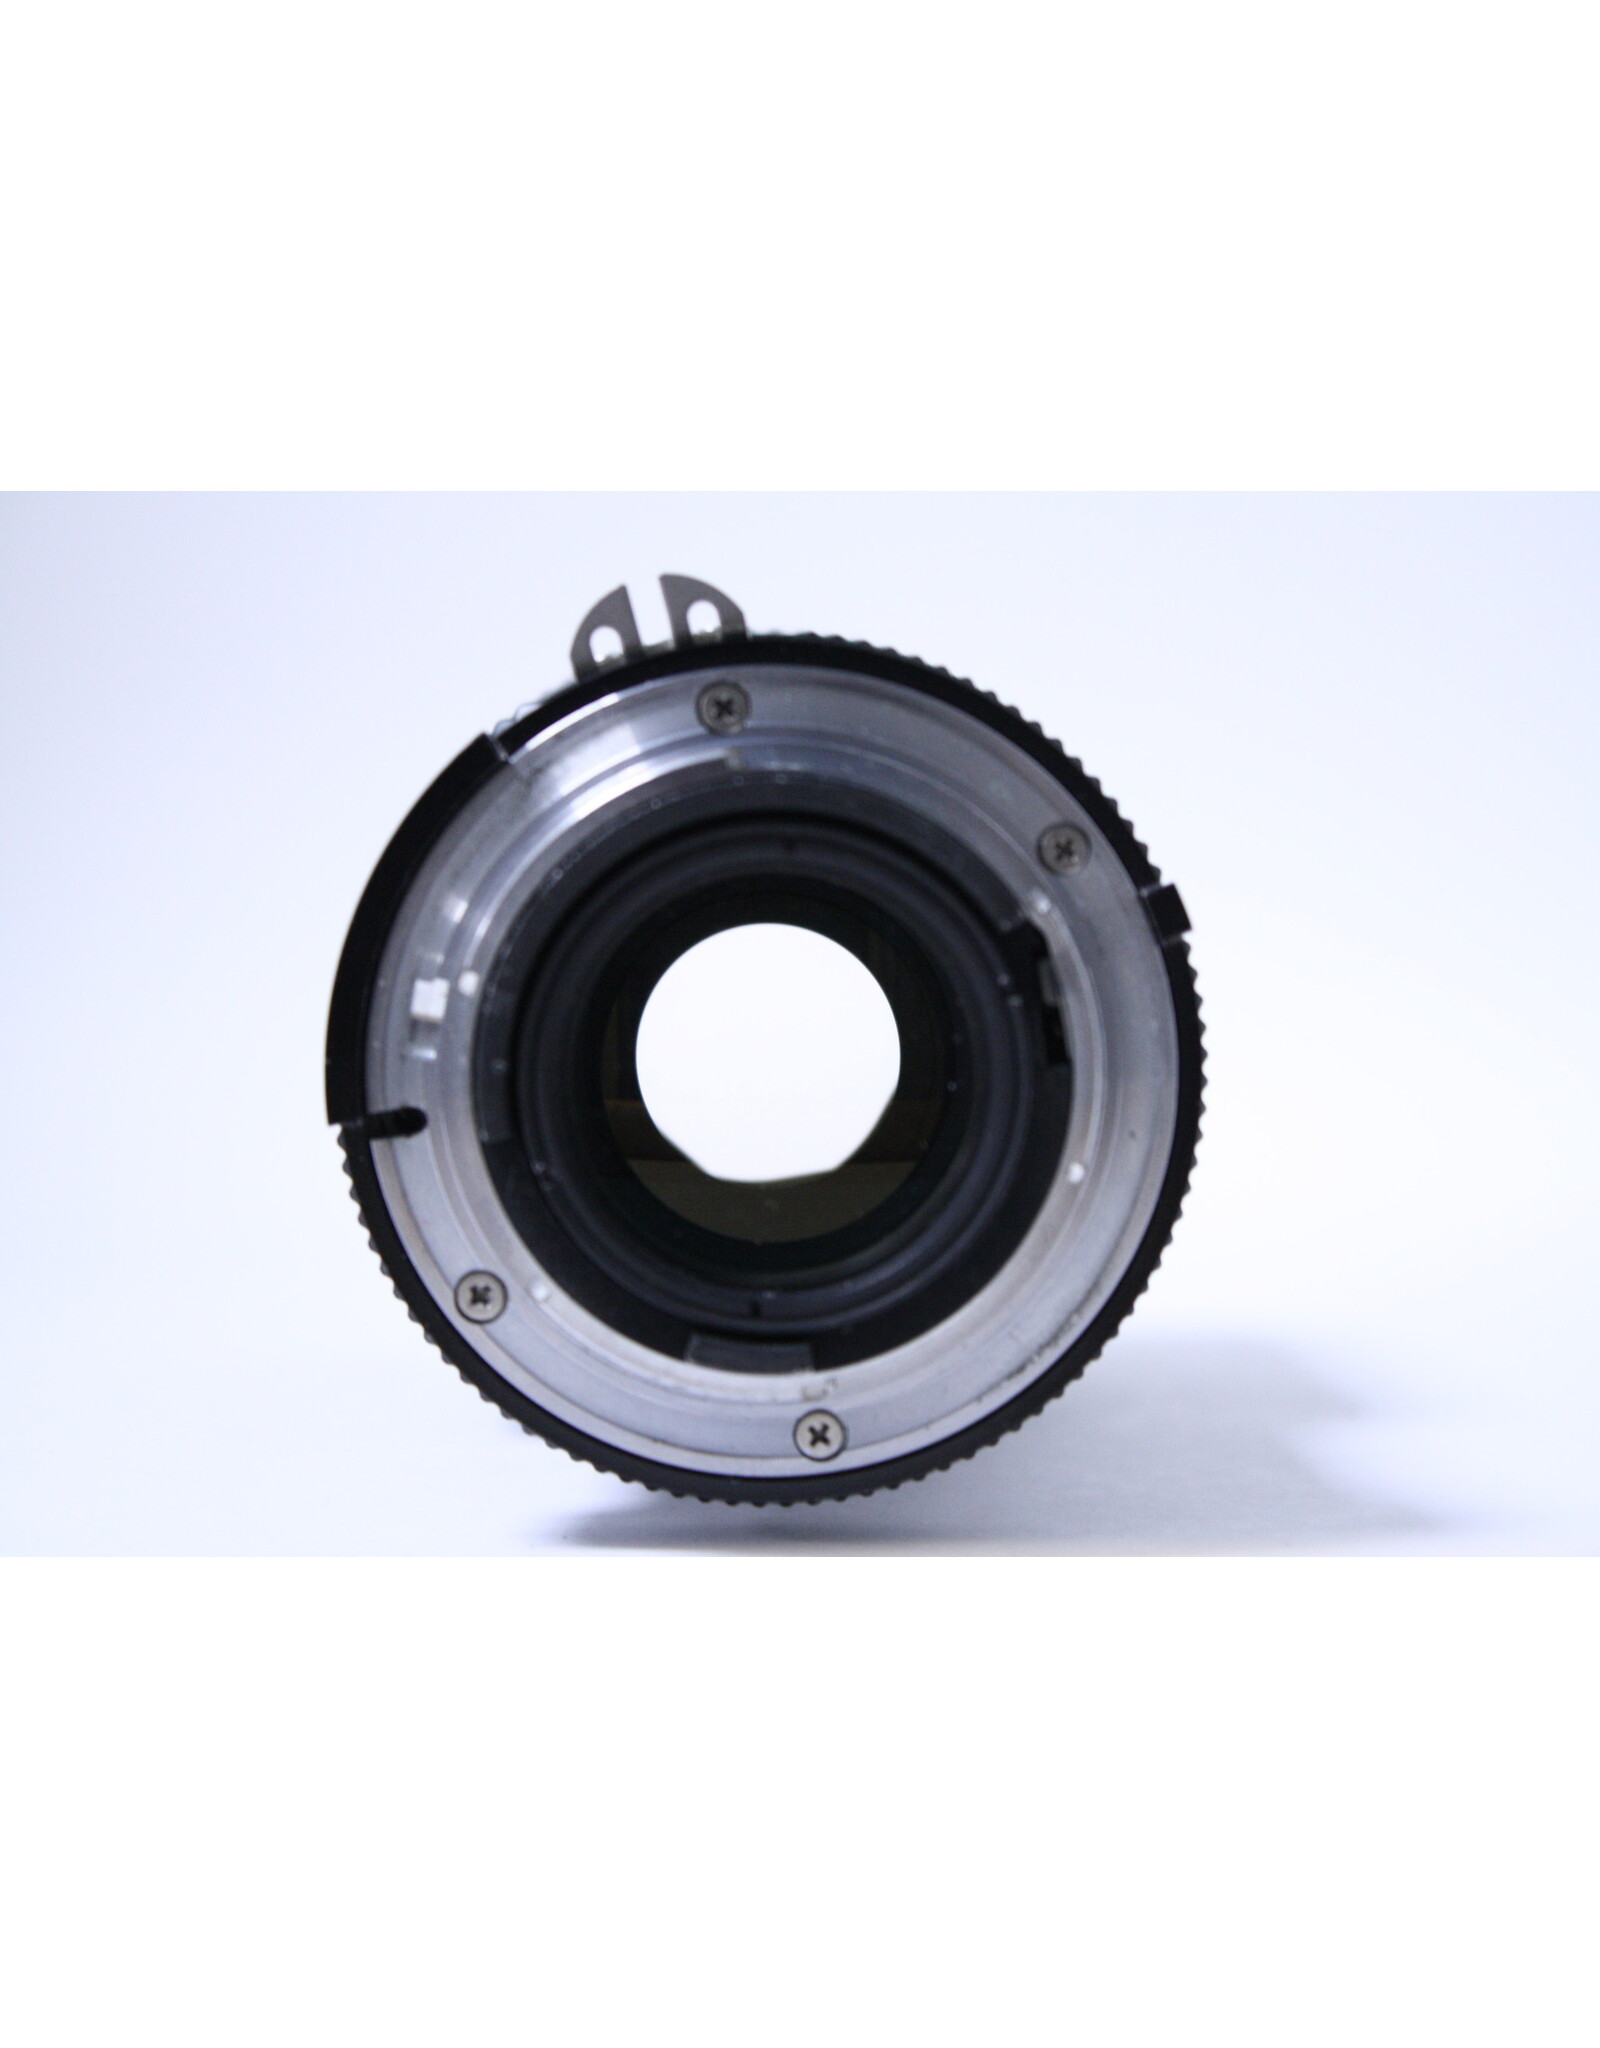 Nikkor AI-S 50-135mm f/3.5 Manual Focus Lens (Pre-owned)